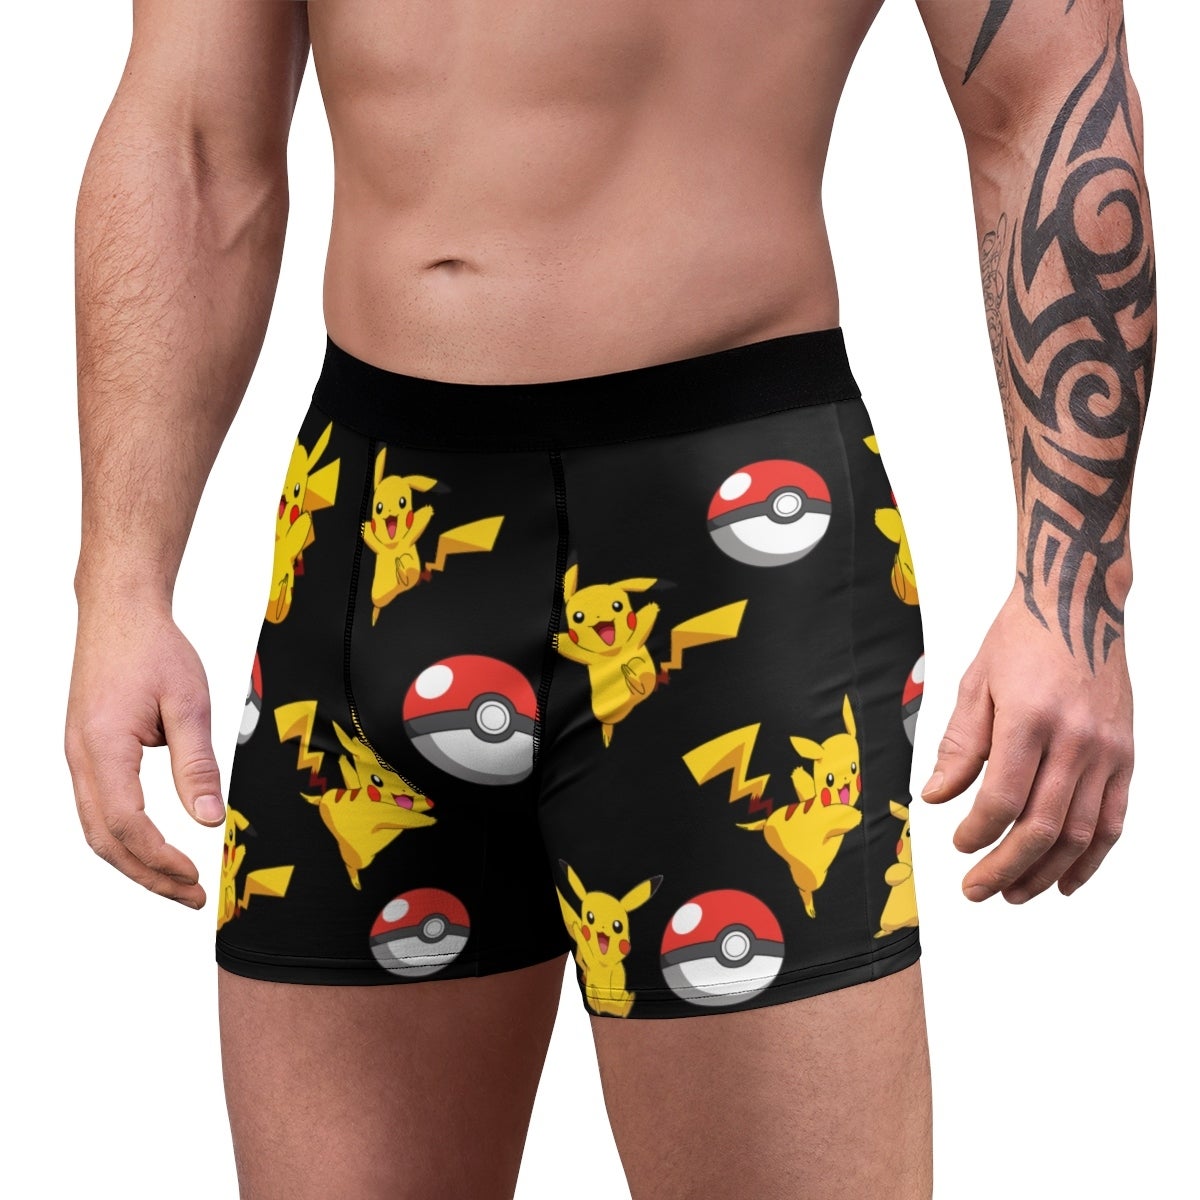 Pokémon boxer briefs